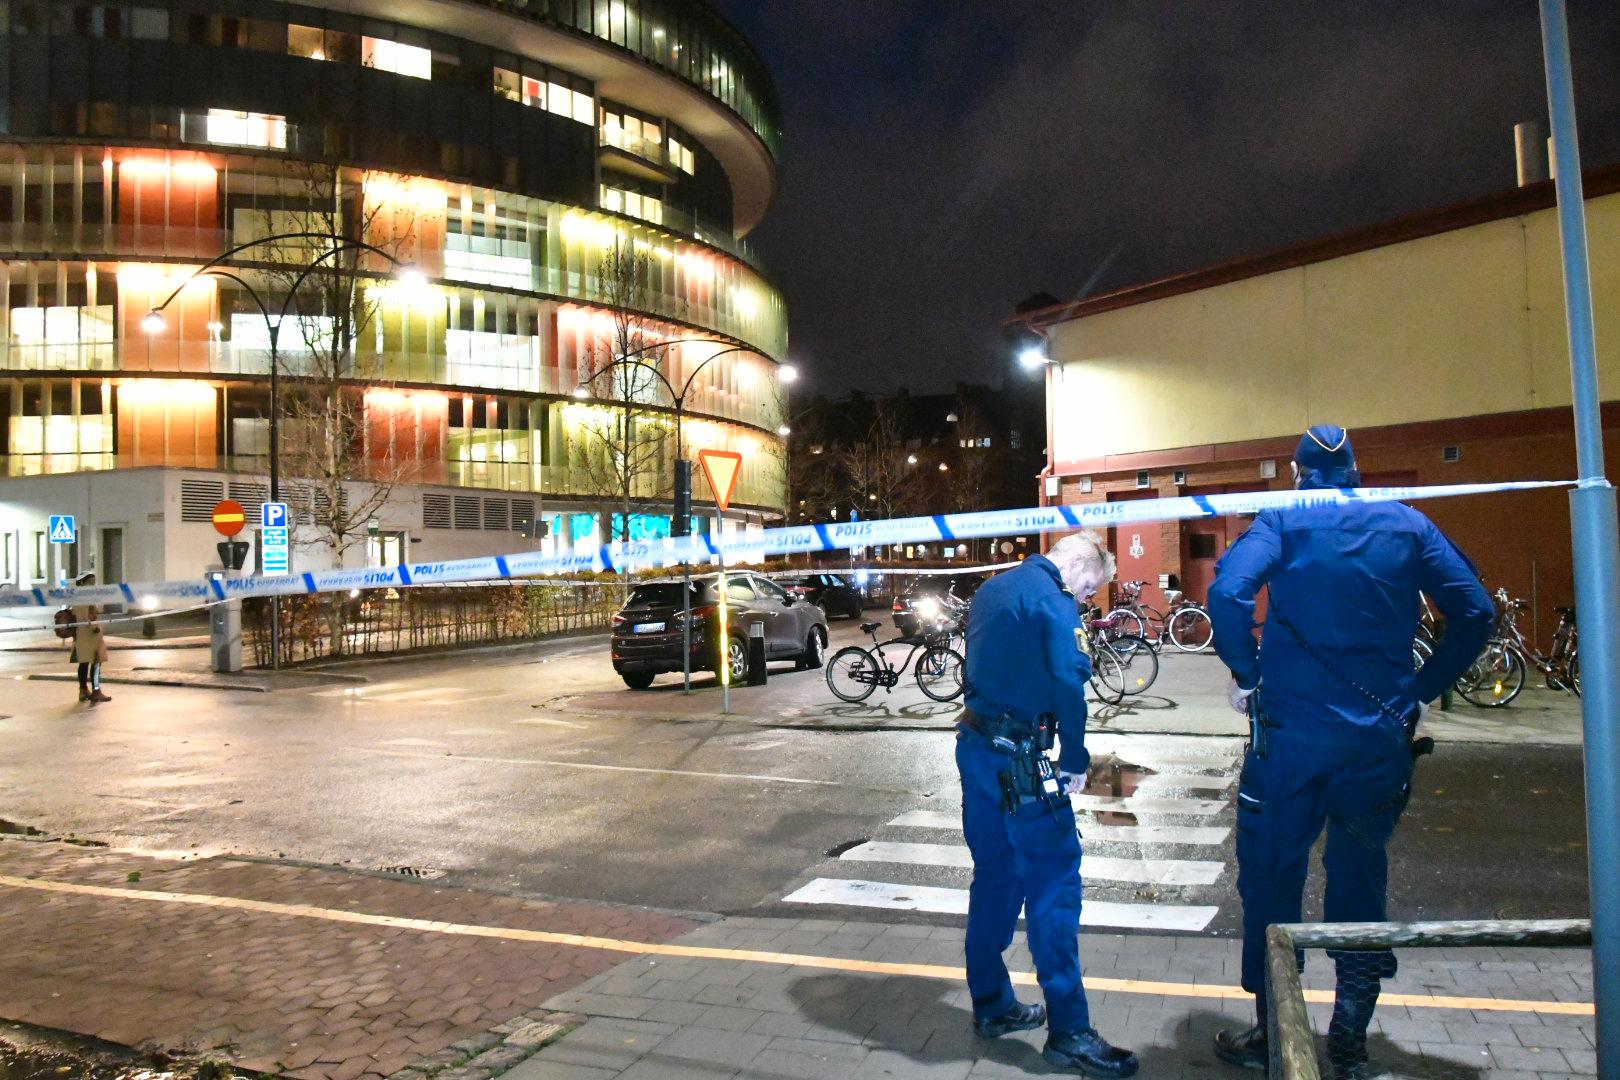 Polis på plats vid sjukhus i Malmö efter skottlossning.